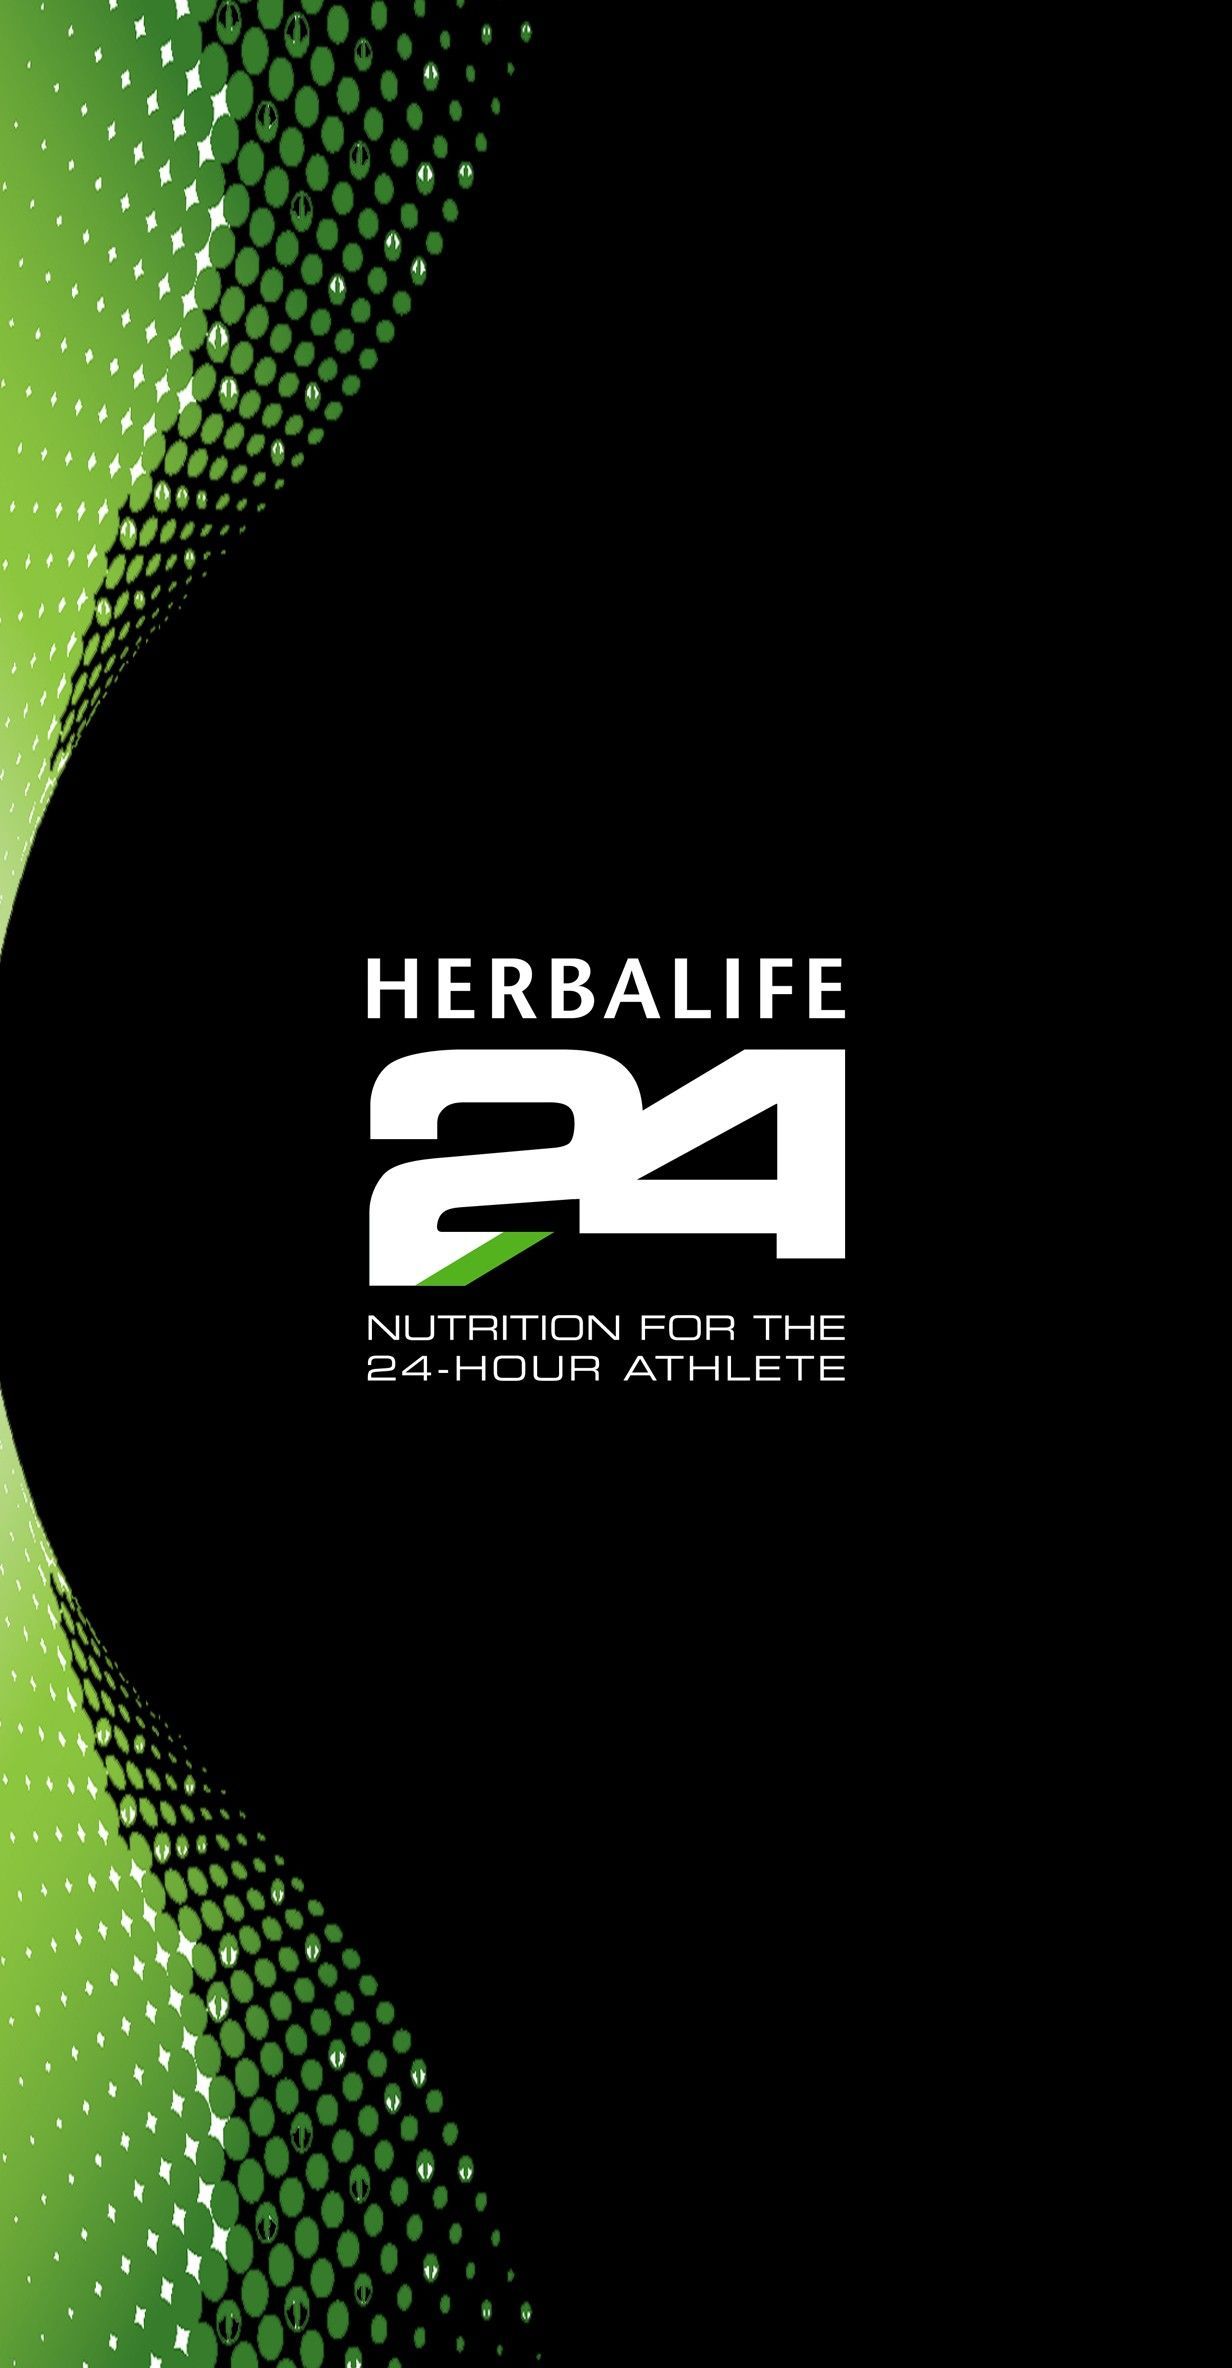 Herbalife24. Nutrición herbalife, Club de nutricion herbalife